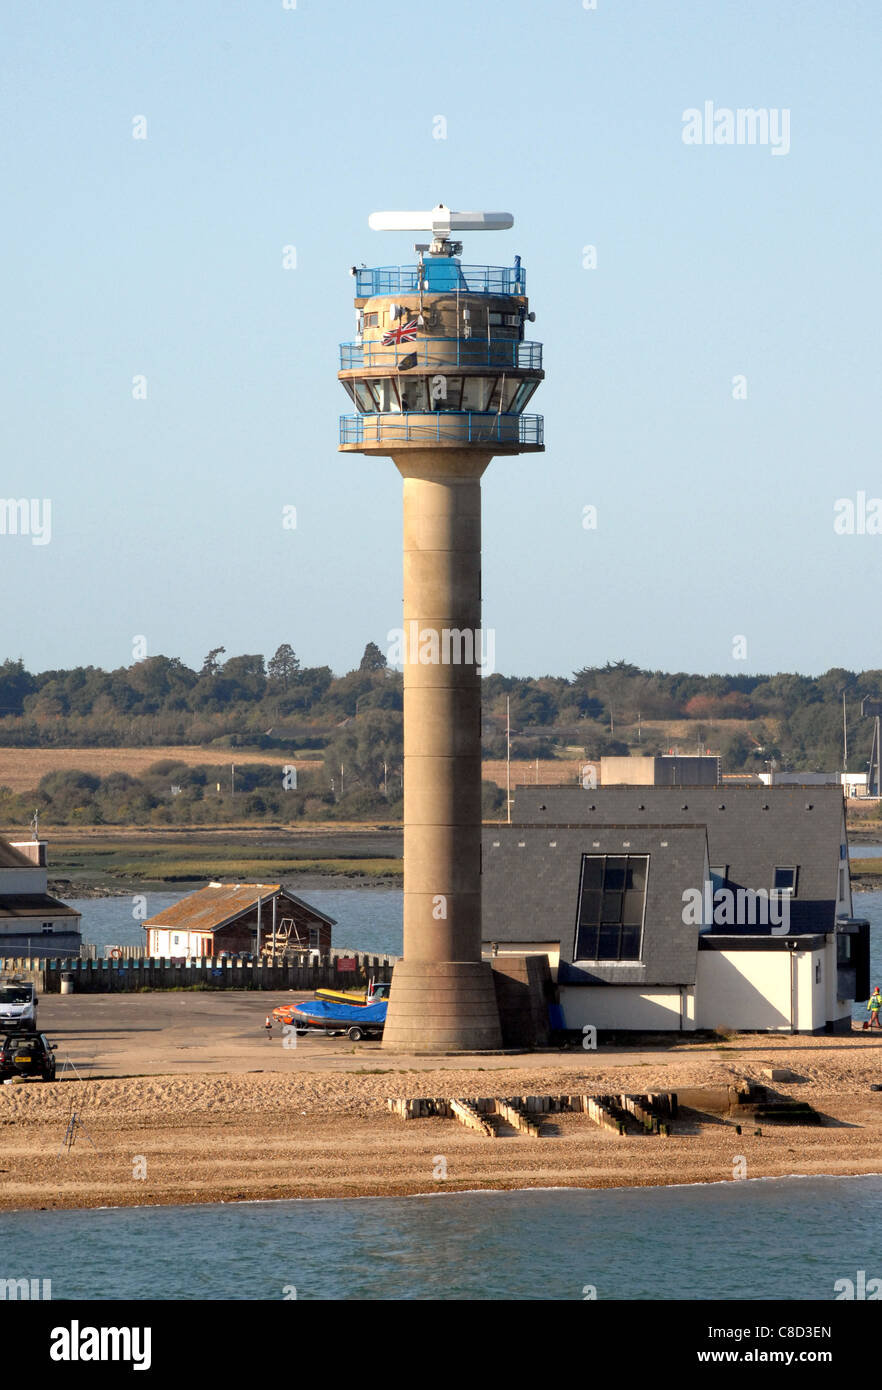 Nationalen Coastwatch Institution (NCI) Turm befindet sich am Calshot, Hampshire, England. Dieser Turm überwacht Versand. Stockfoto